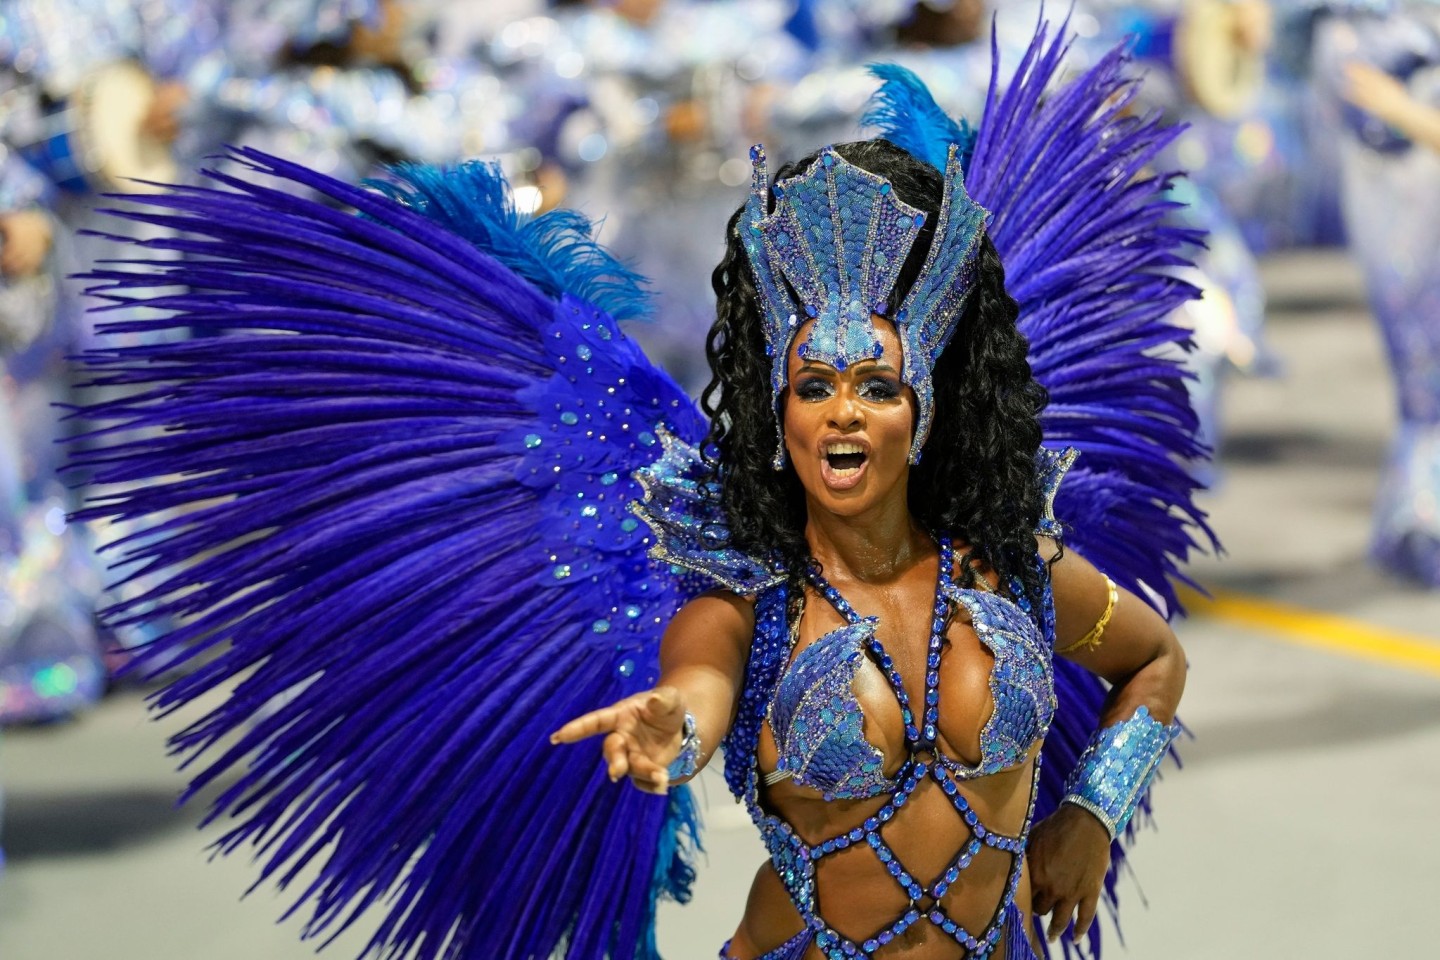 Extravagante Kostüme gehören beim Karneval in Brasilien dazu.